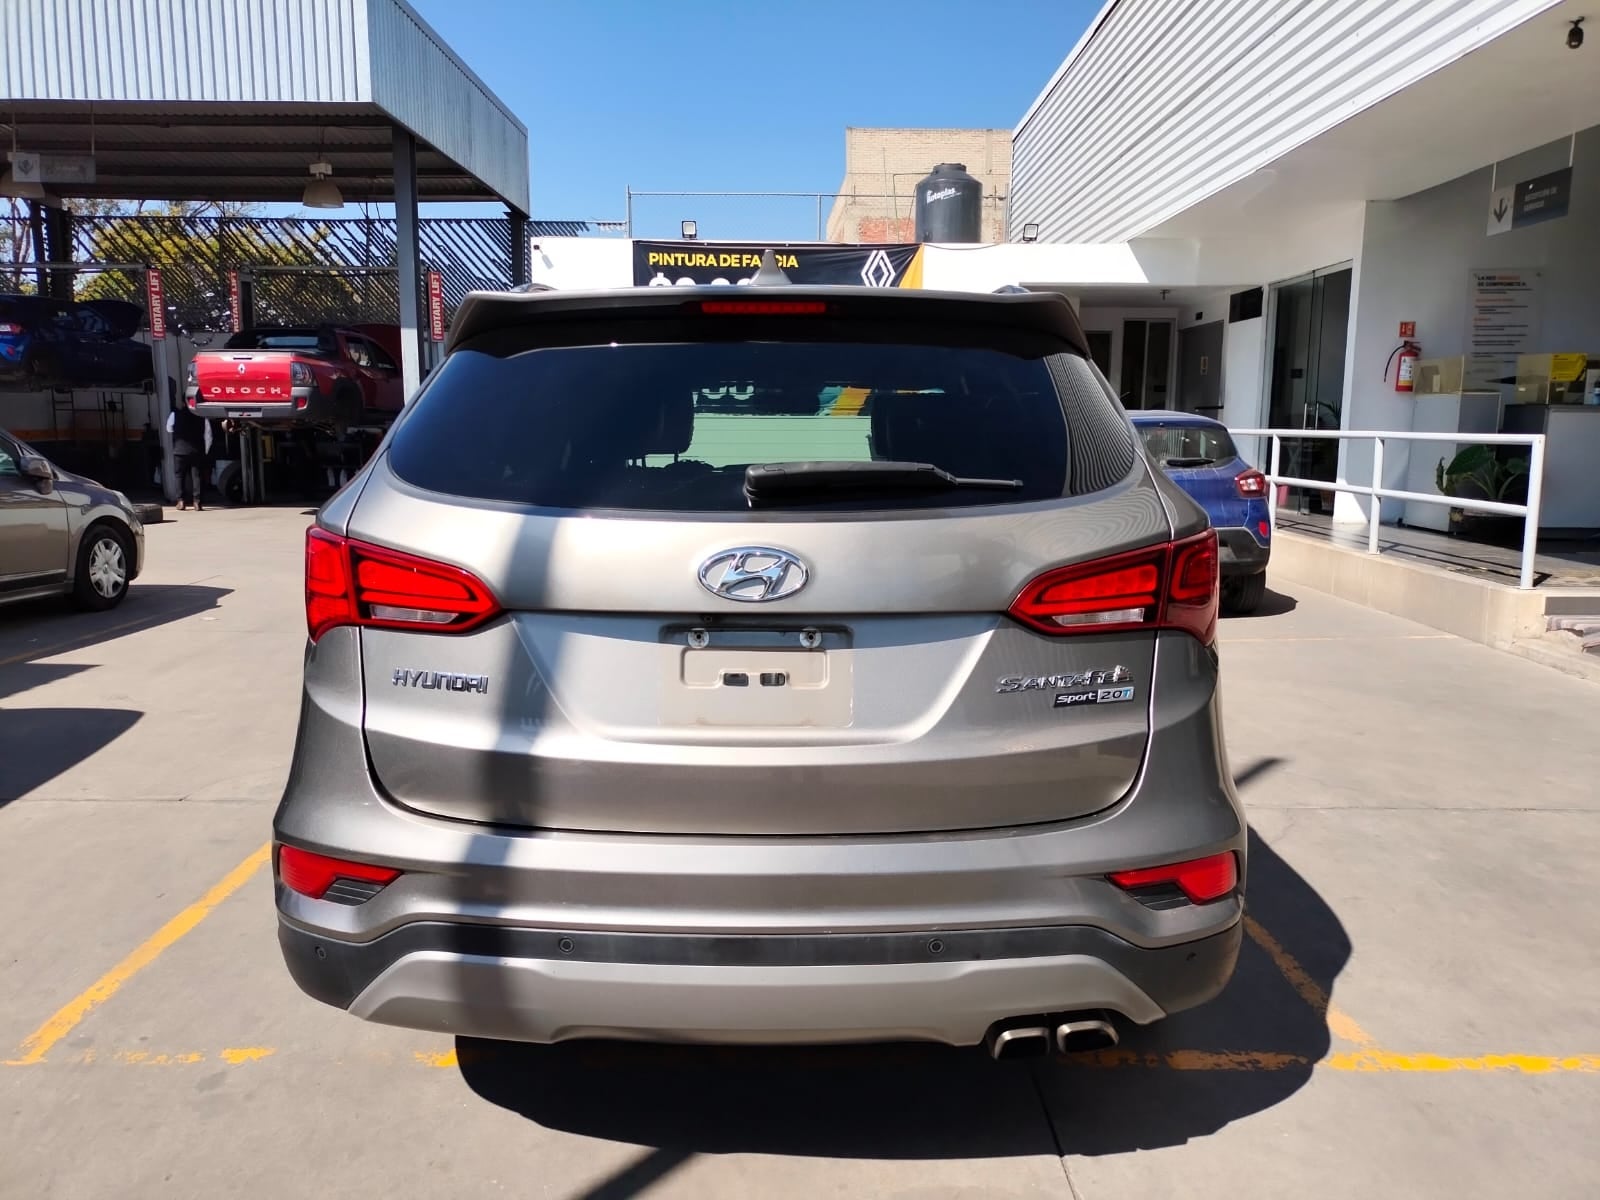 2018 Hyundai Santa Fe VUD 5 pts. Sport, L4, 2.0T, TA, piel, QCP, RA-19 (línea anterior)